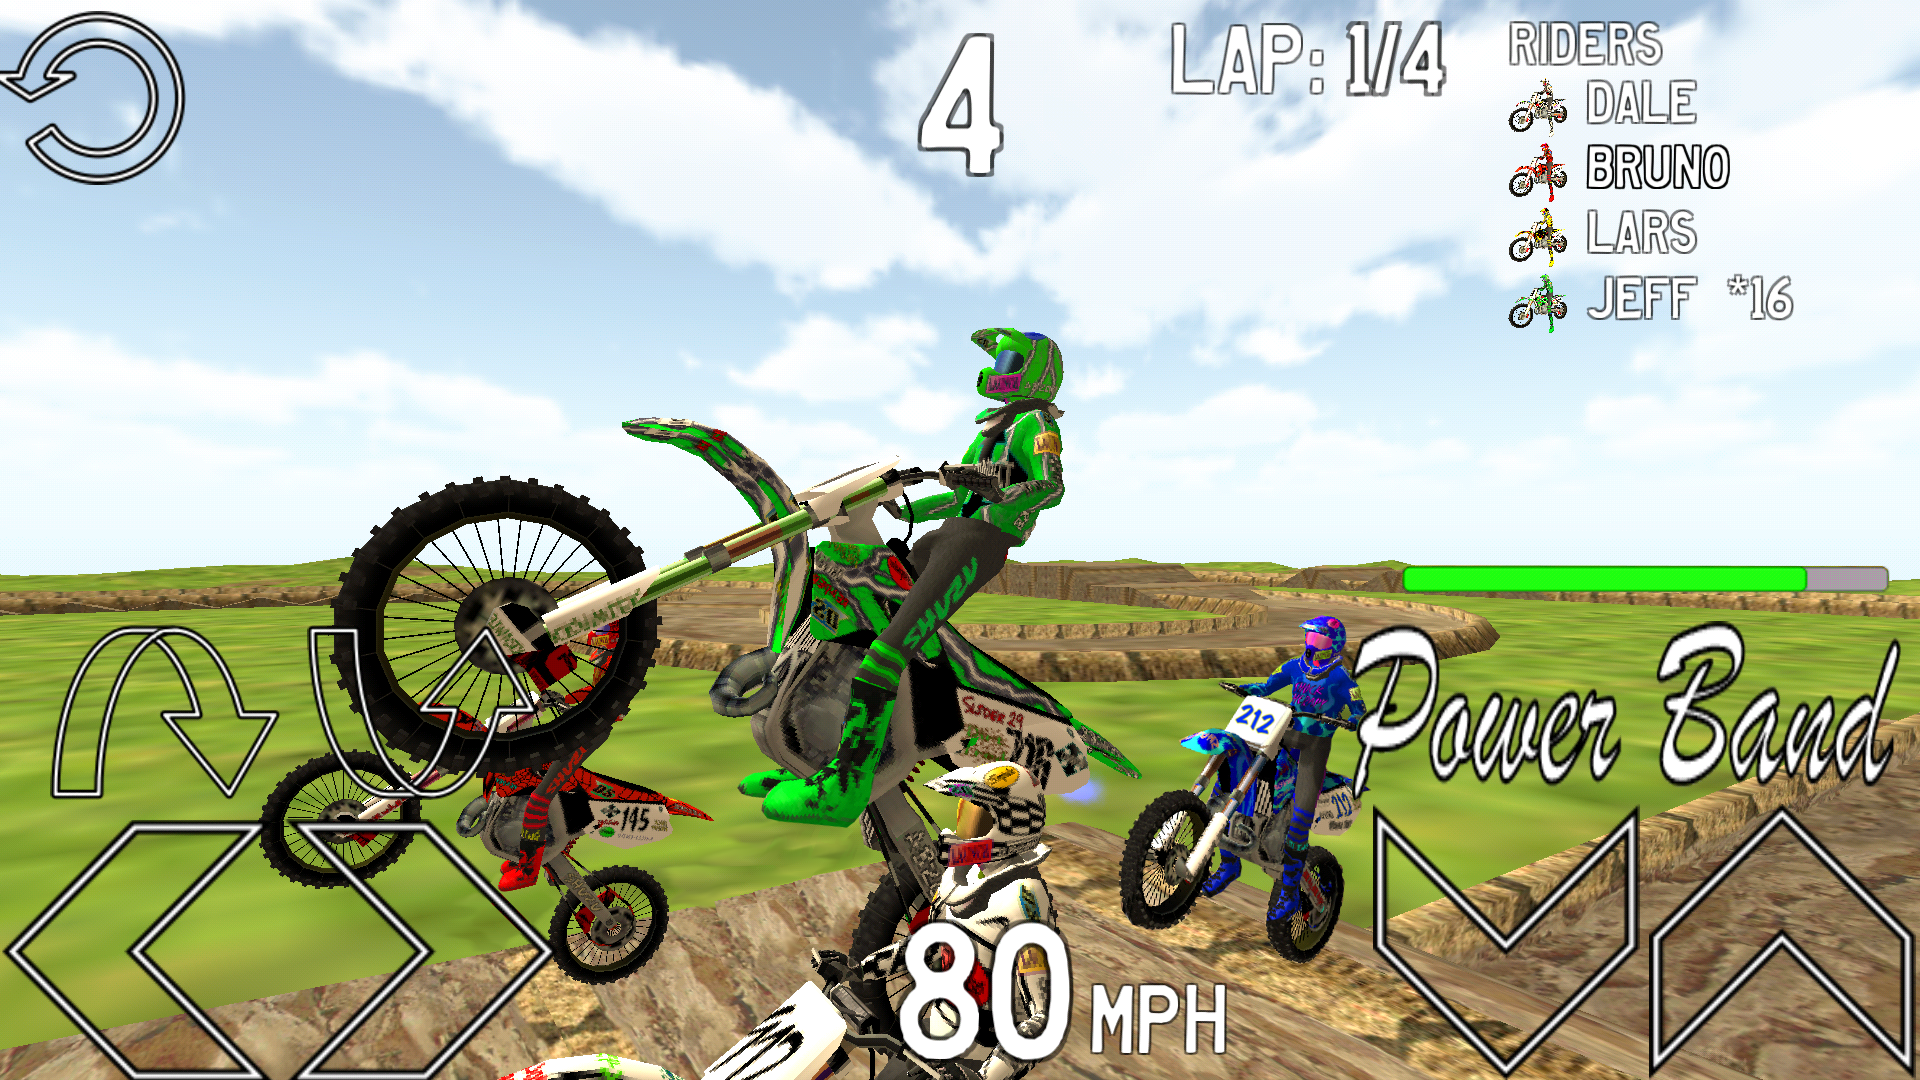 Screenshot 1 of Pro MX3 